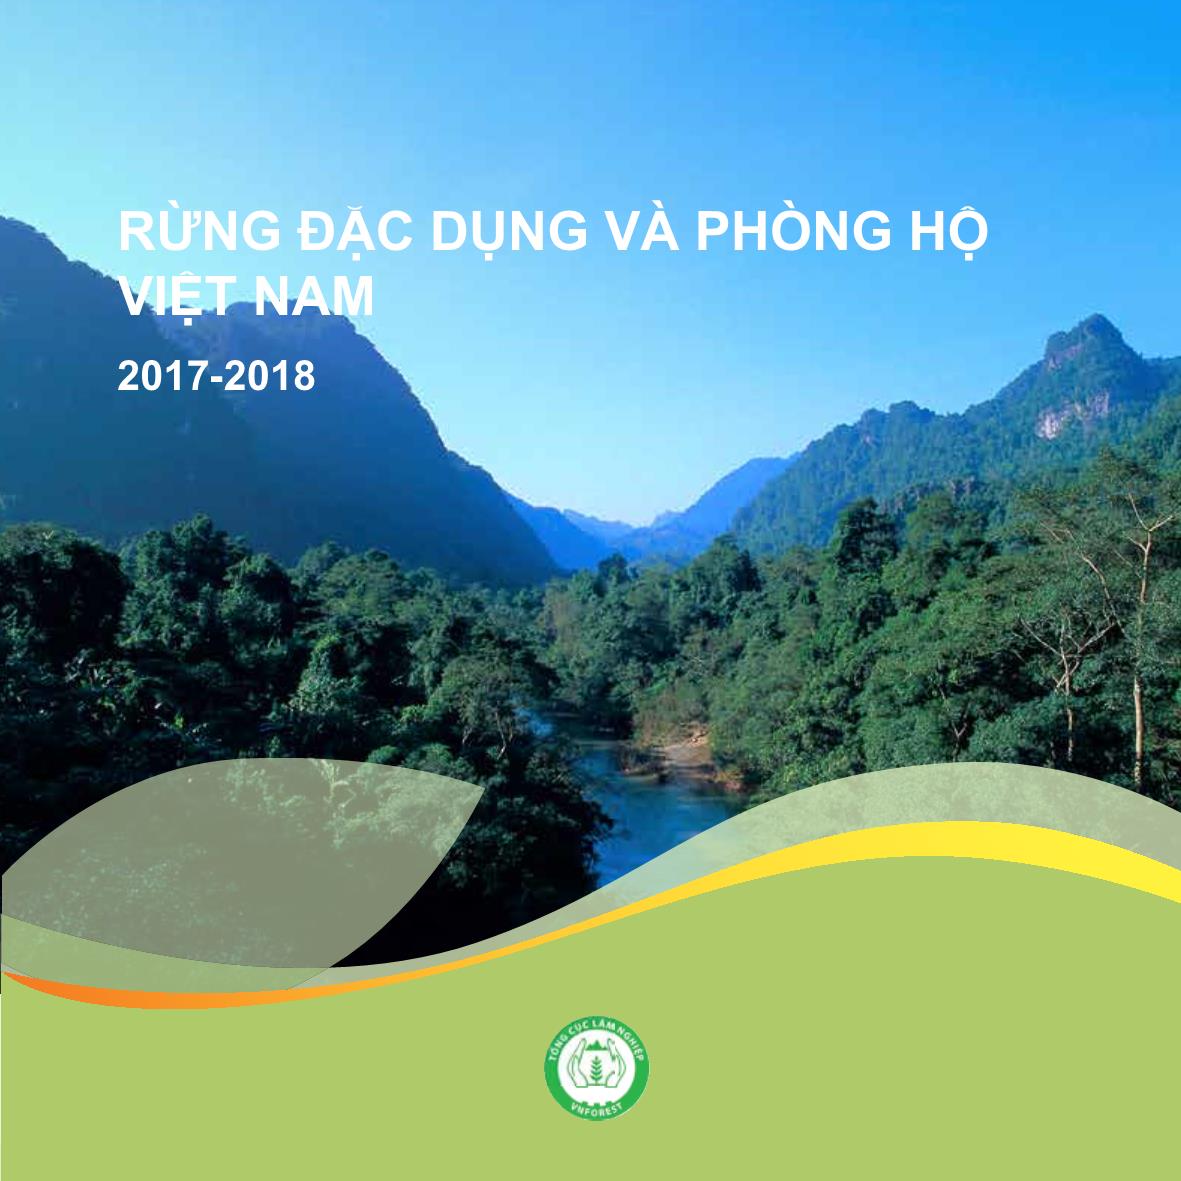 Báo cáo Rừng đặc dụng và phòng hộ Việt Nam năm 2017-2018 trang 1